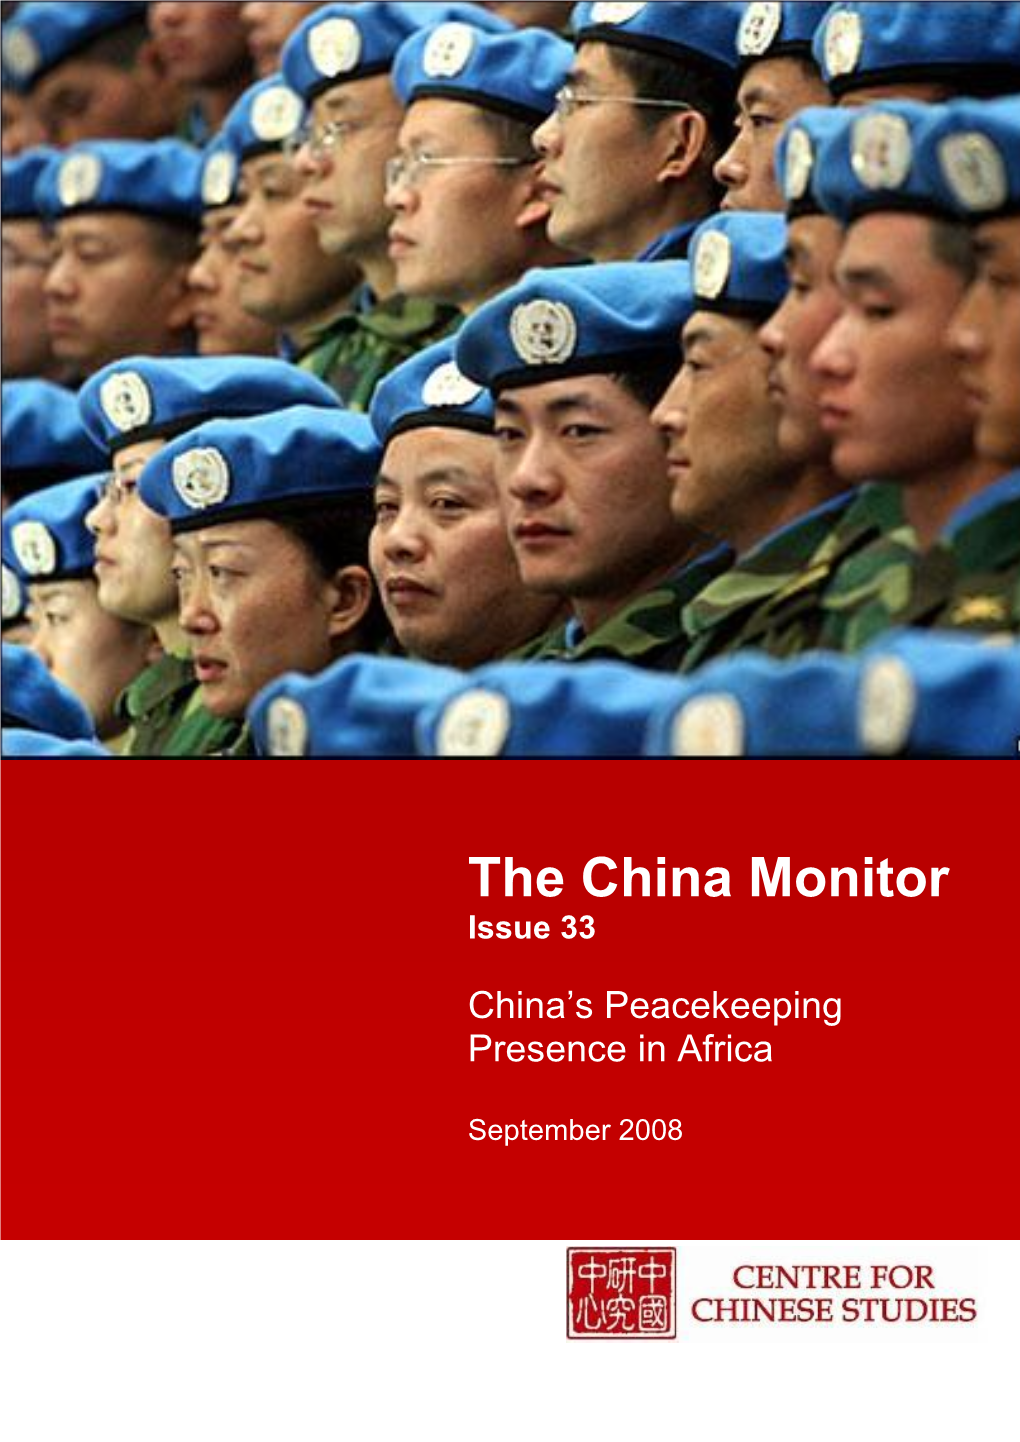 The China Monitor